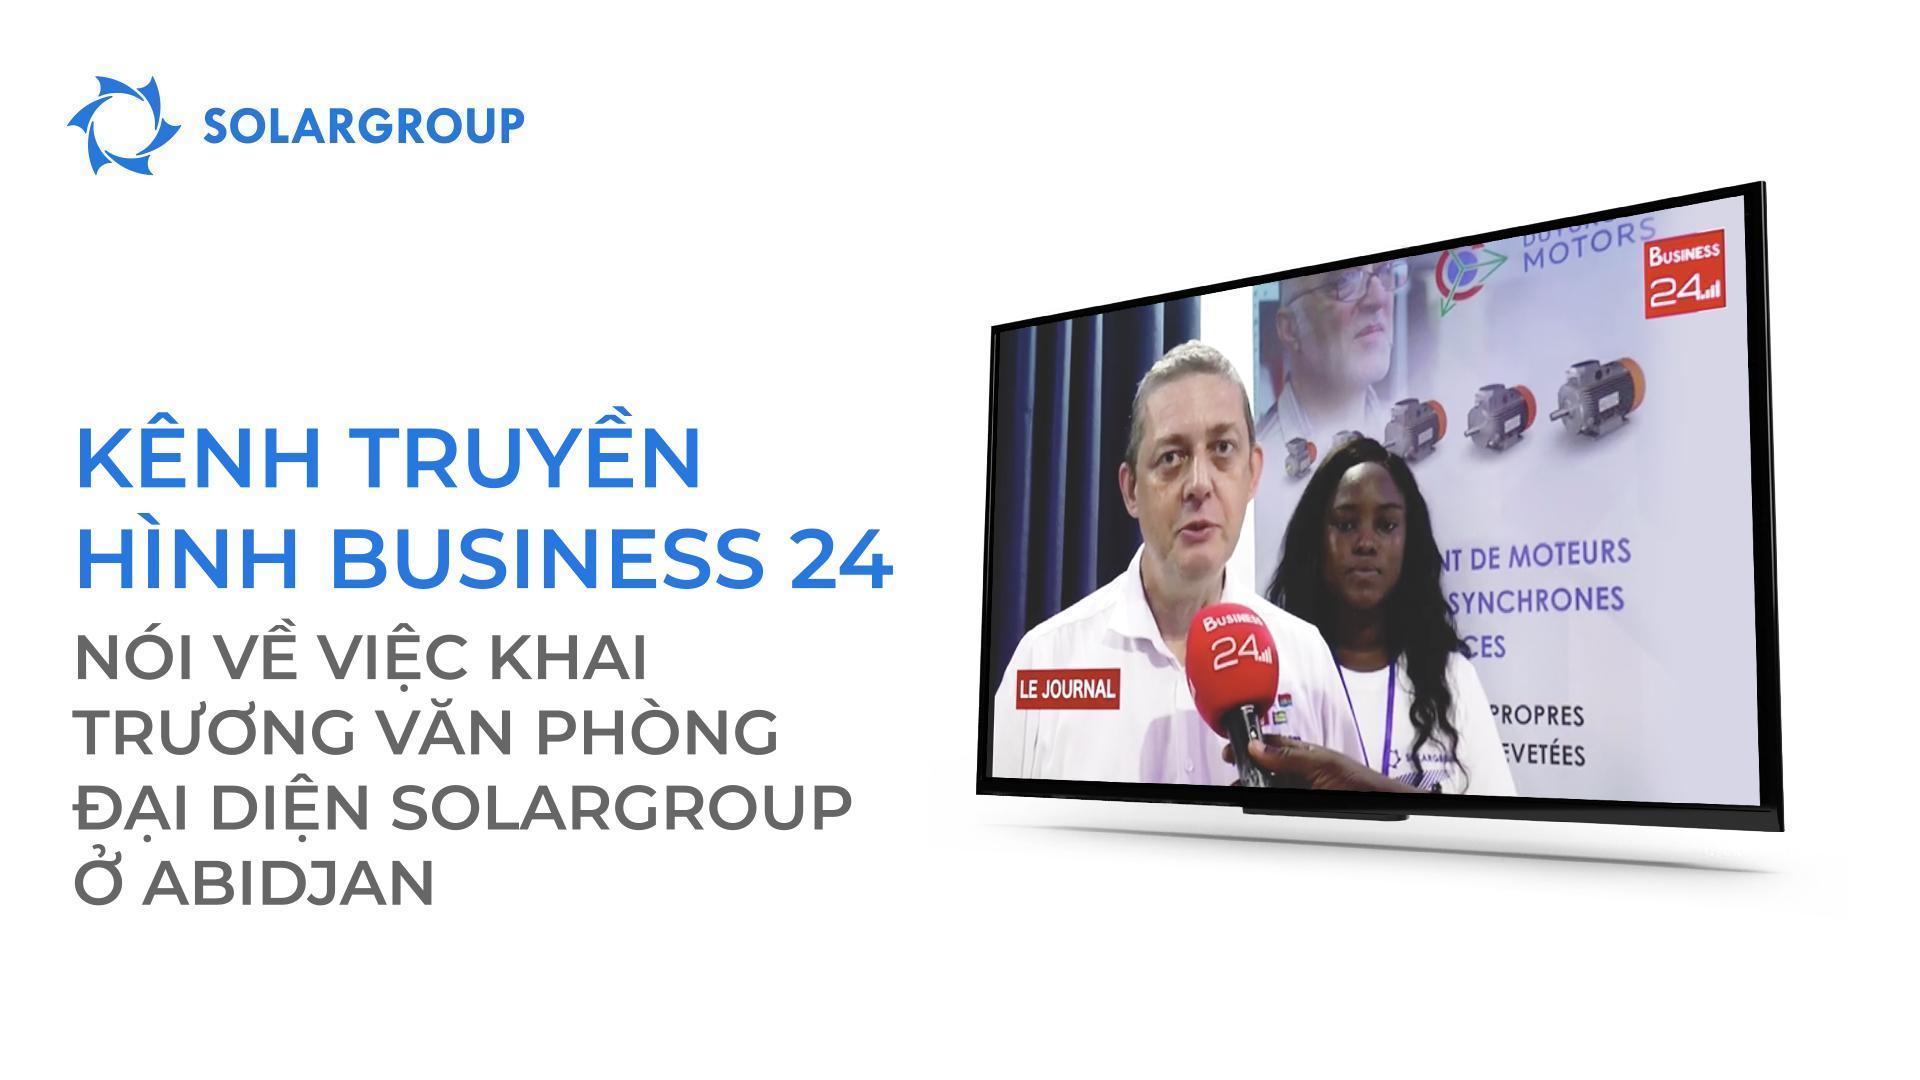 Kênh truyền hình Business 24 nói về việc mở văn phòng SOLARGROUP tại Abidjan